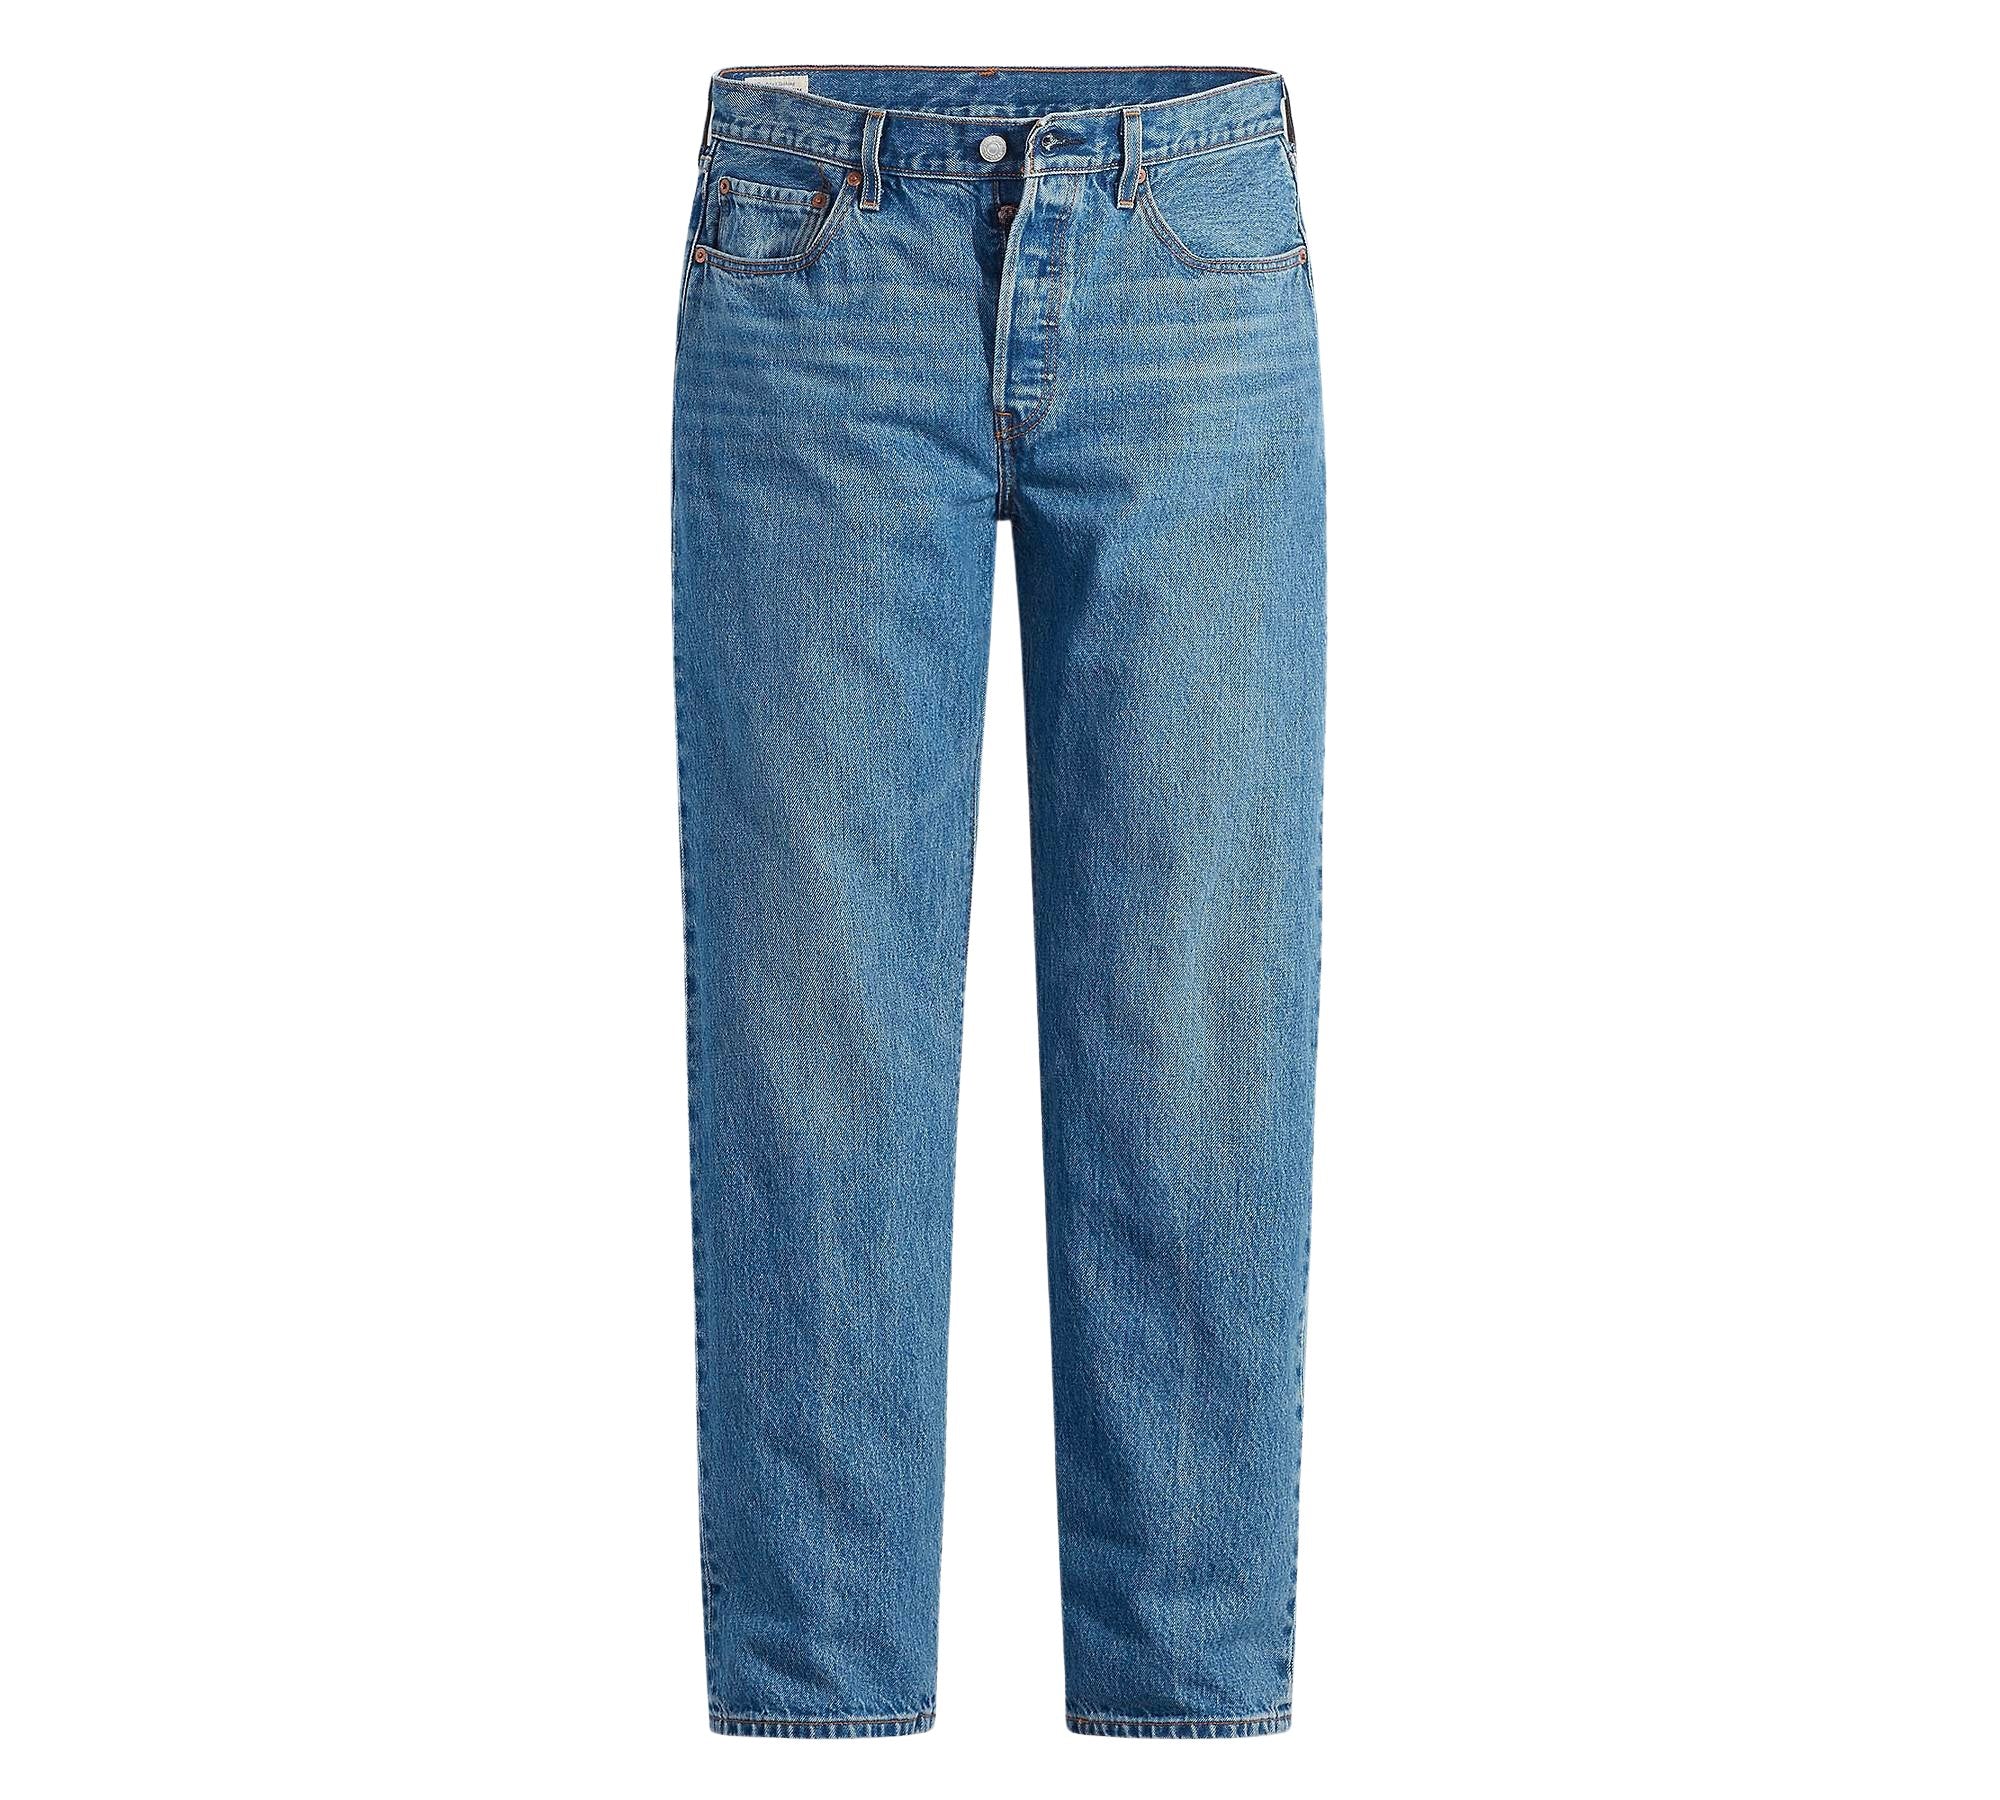 Vintage Levi's Classic Blue Jeans - Waist 30 - Length 30 - Vintage Superstore Online